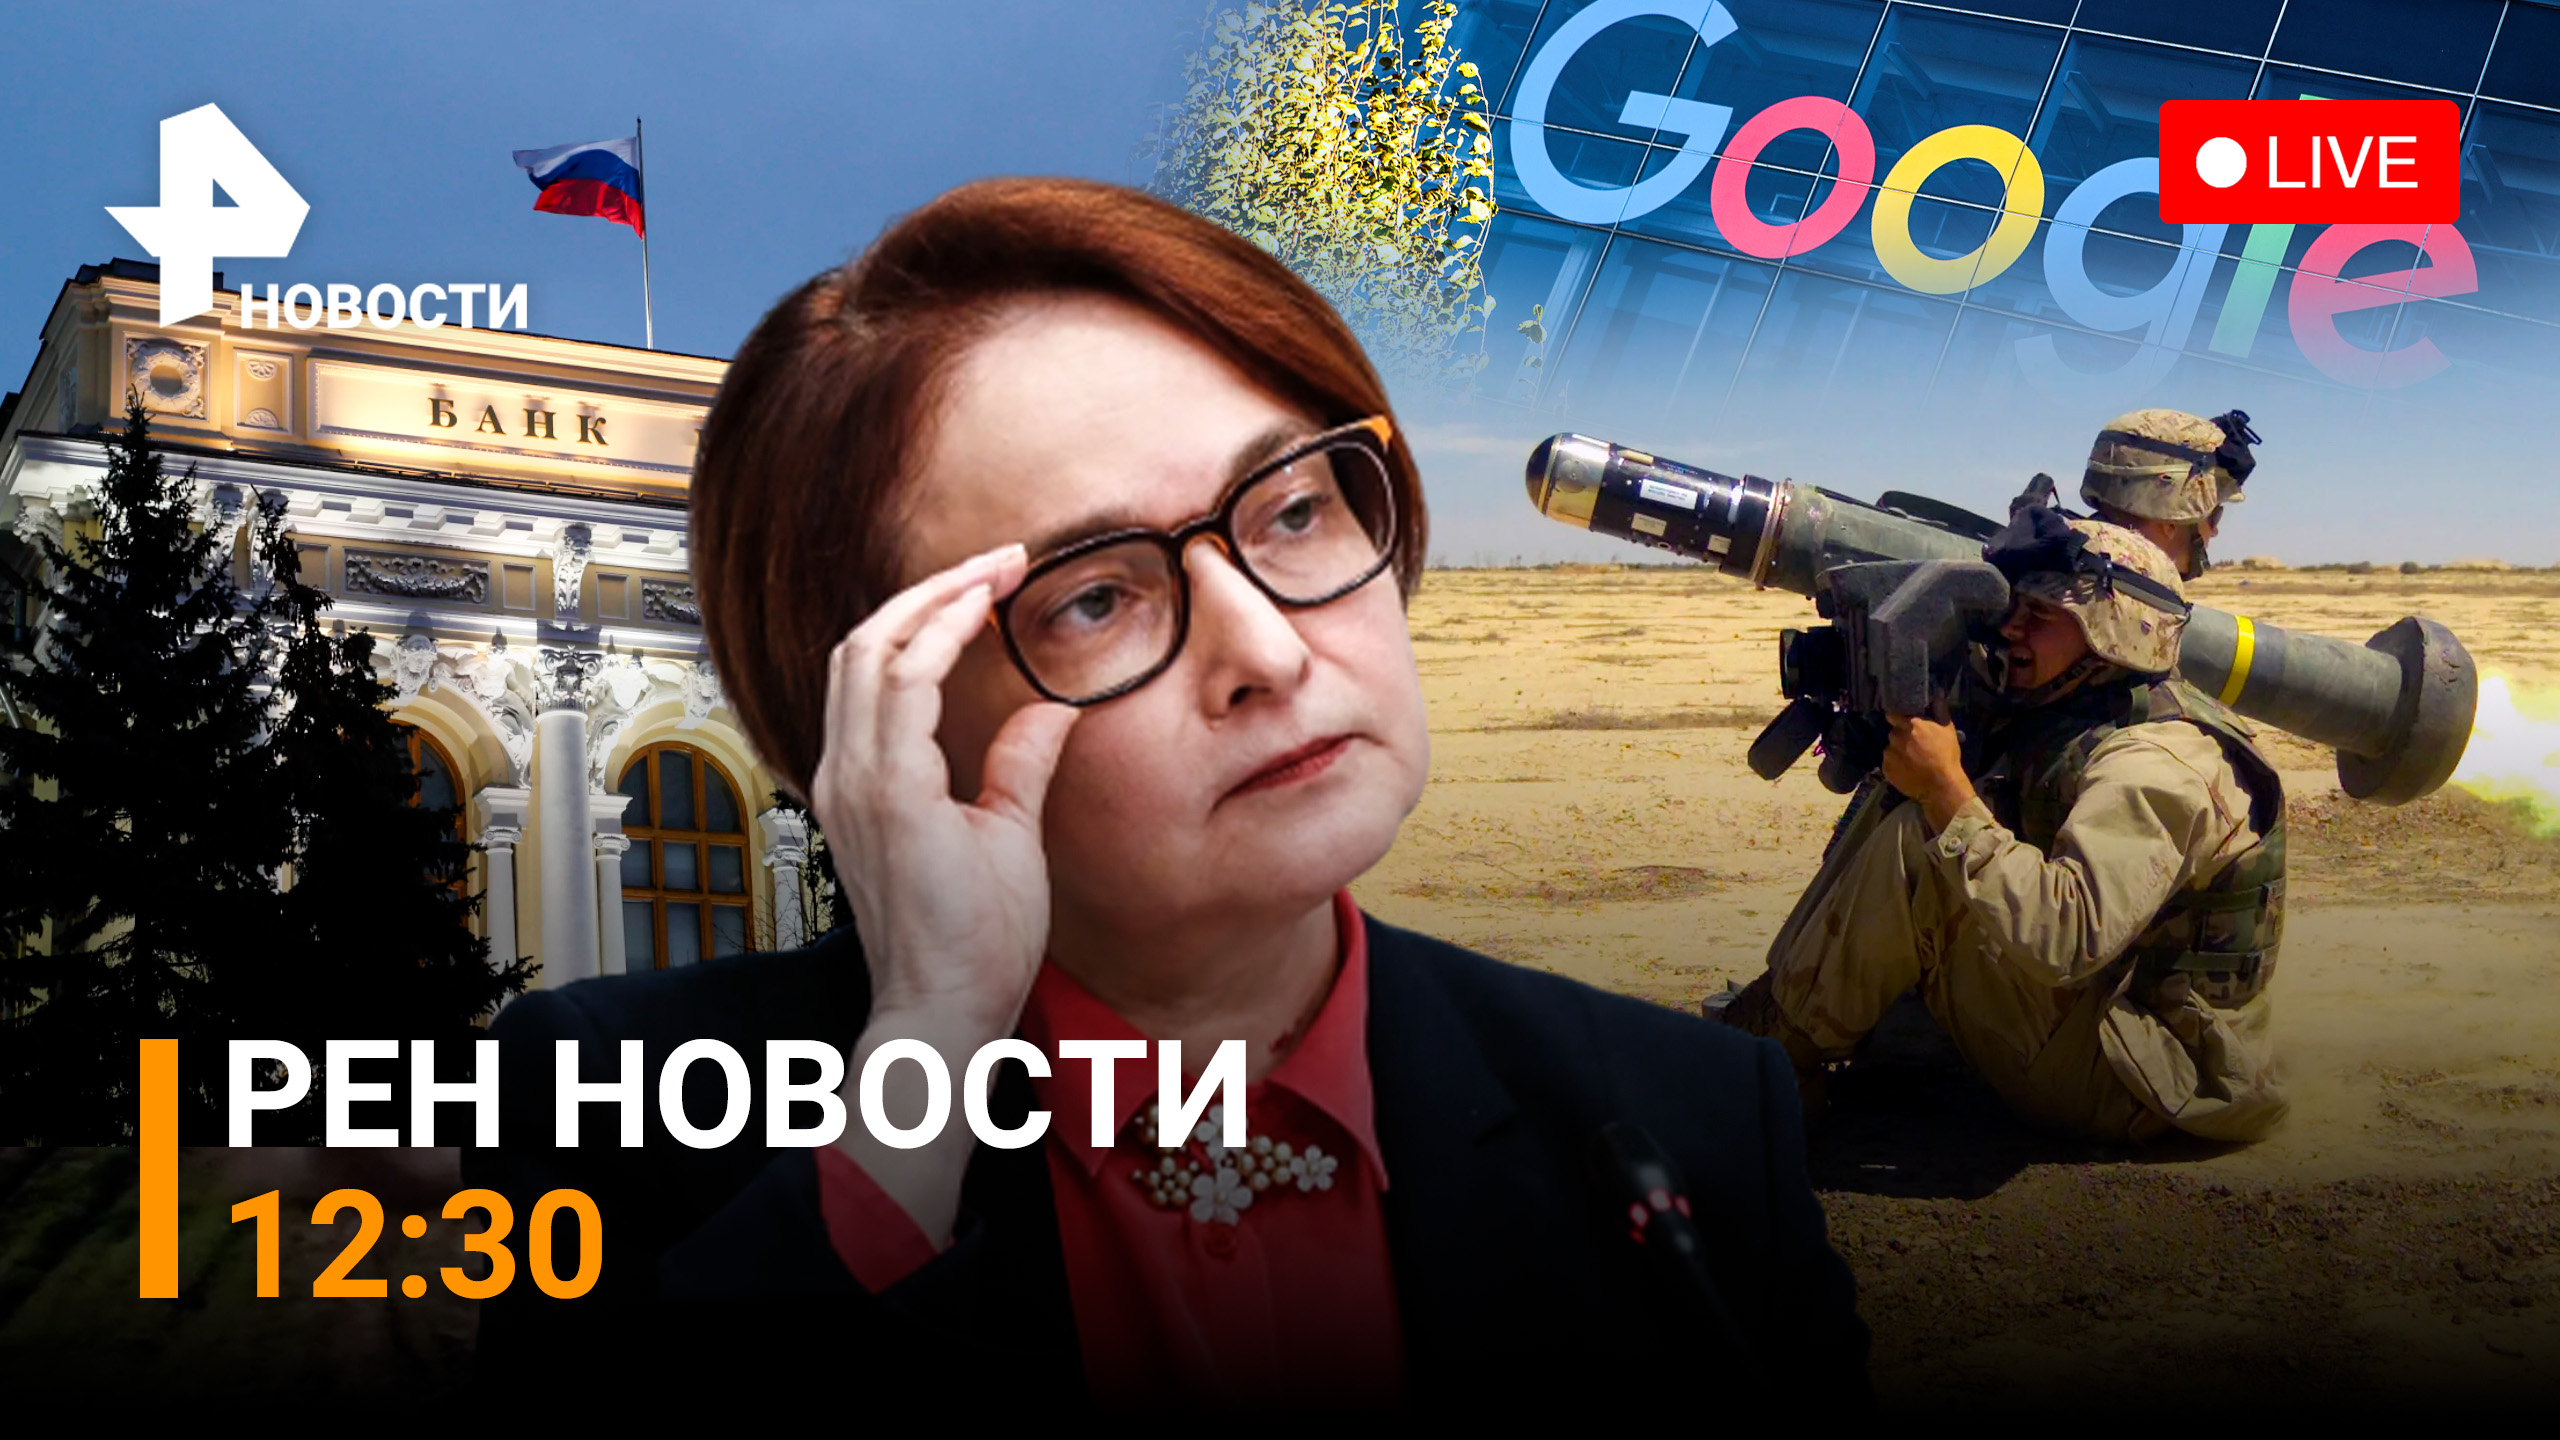 Святая Джавелина в центре скандала. Google хочет затормозить интернет в РФ /РЕН Новости 26 мая,12:30